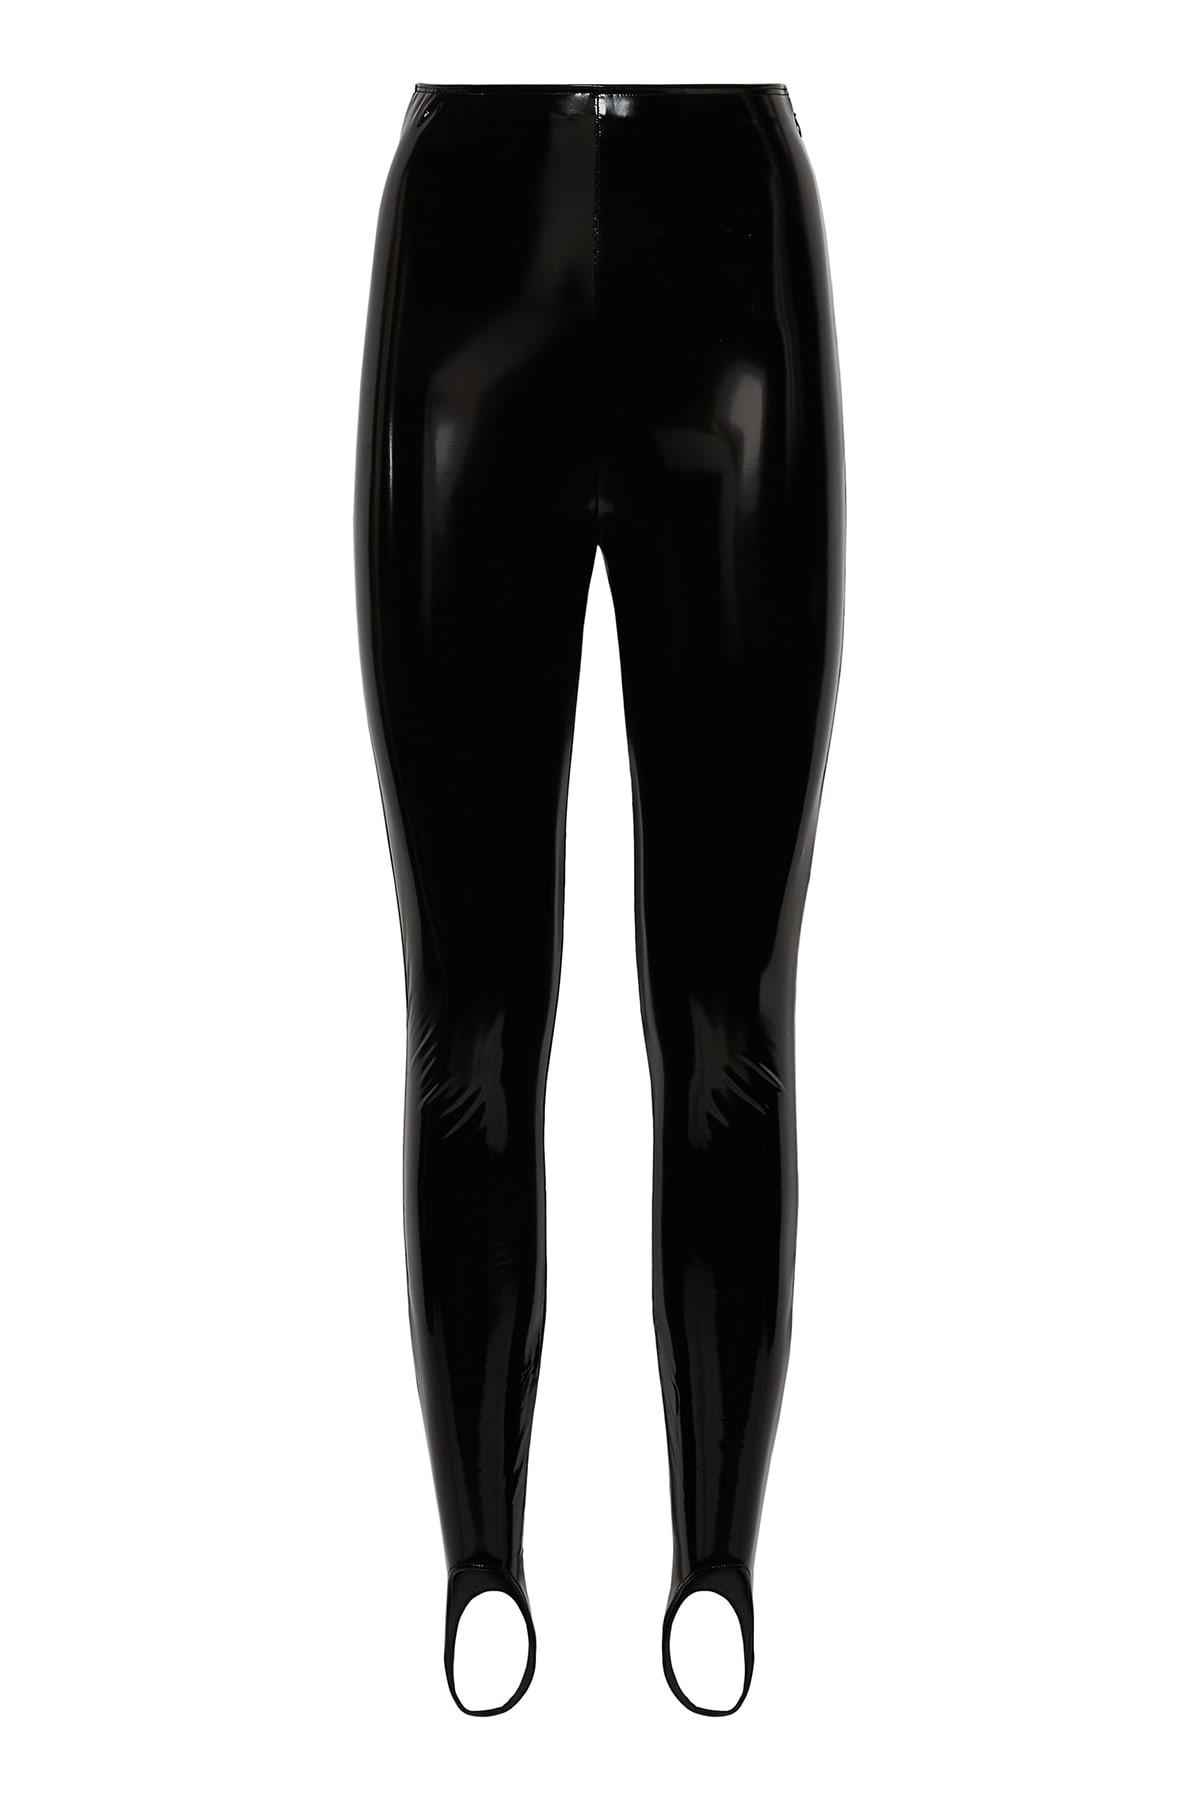 Wolford Latex leggings in Black